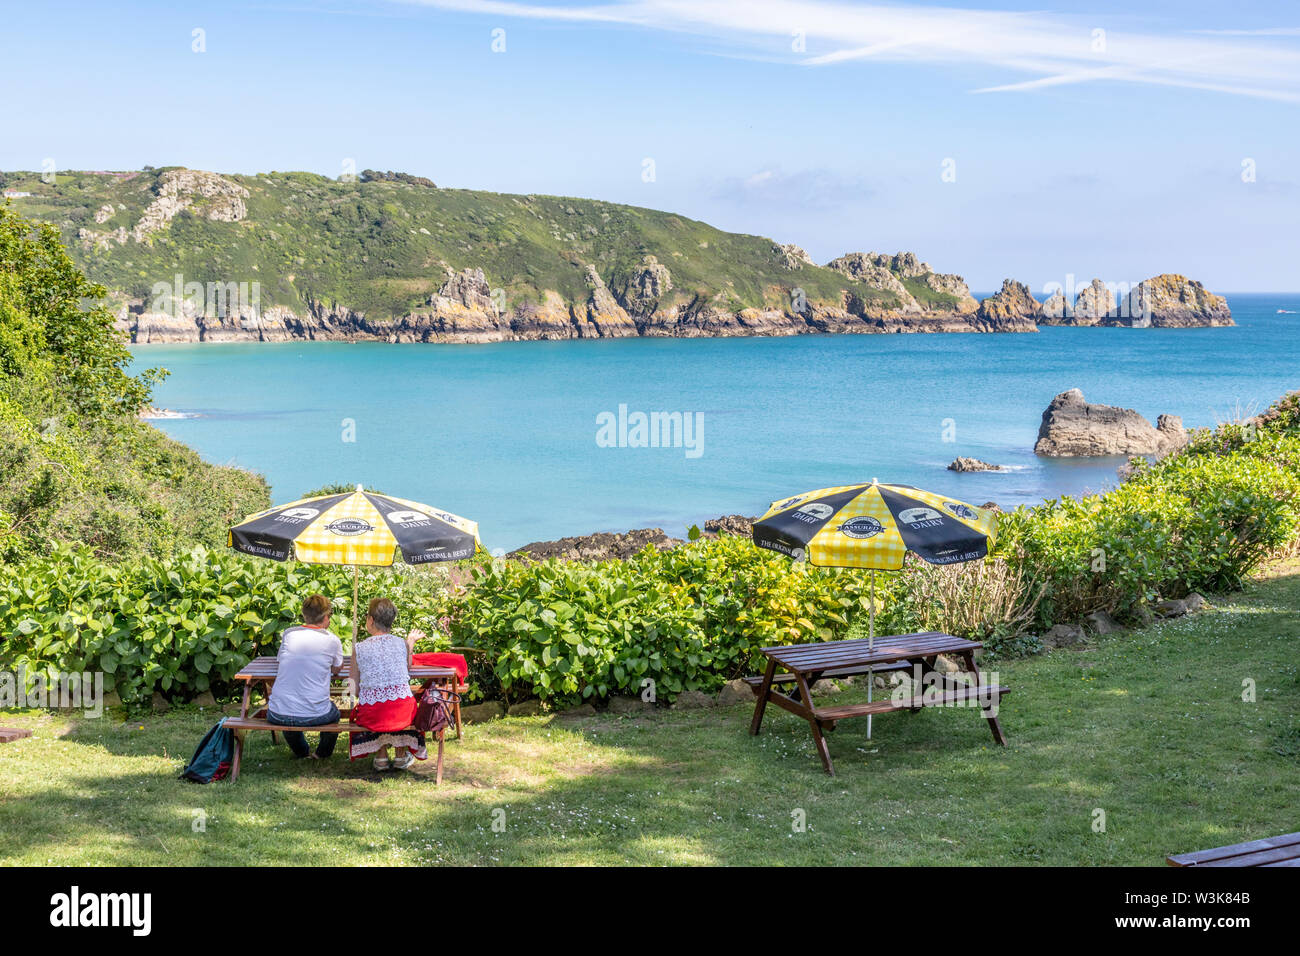 Die schöne zerklüftete Südküste von Guernsey - ein Blick auf die Moulin Huet Bay von der Tea Gardens, Guernsey, Kanalinseln, Großbritannien Stockfoto